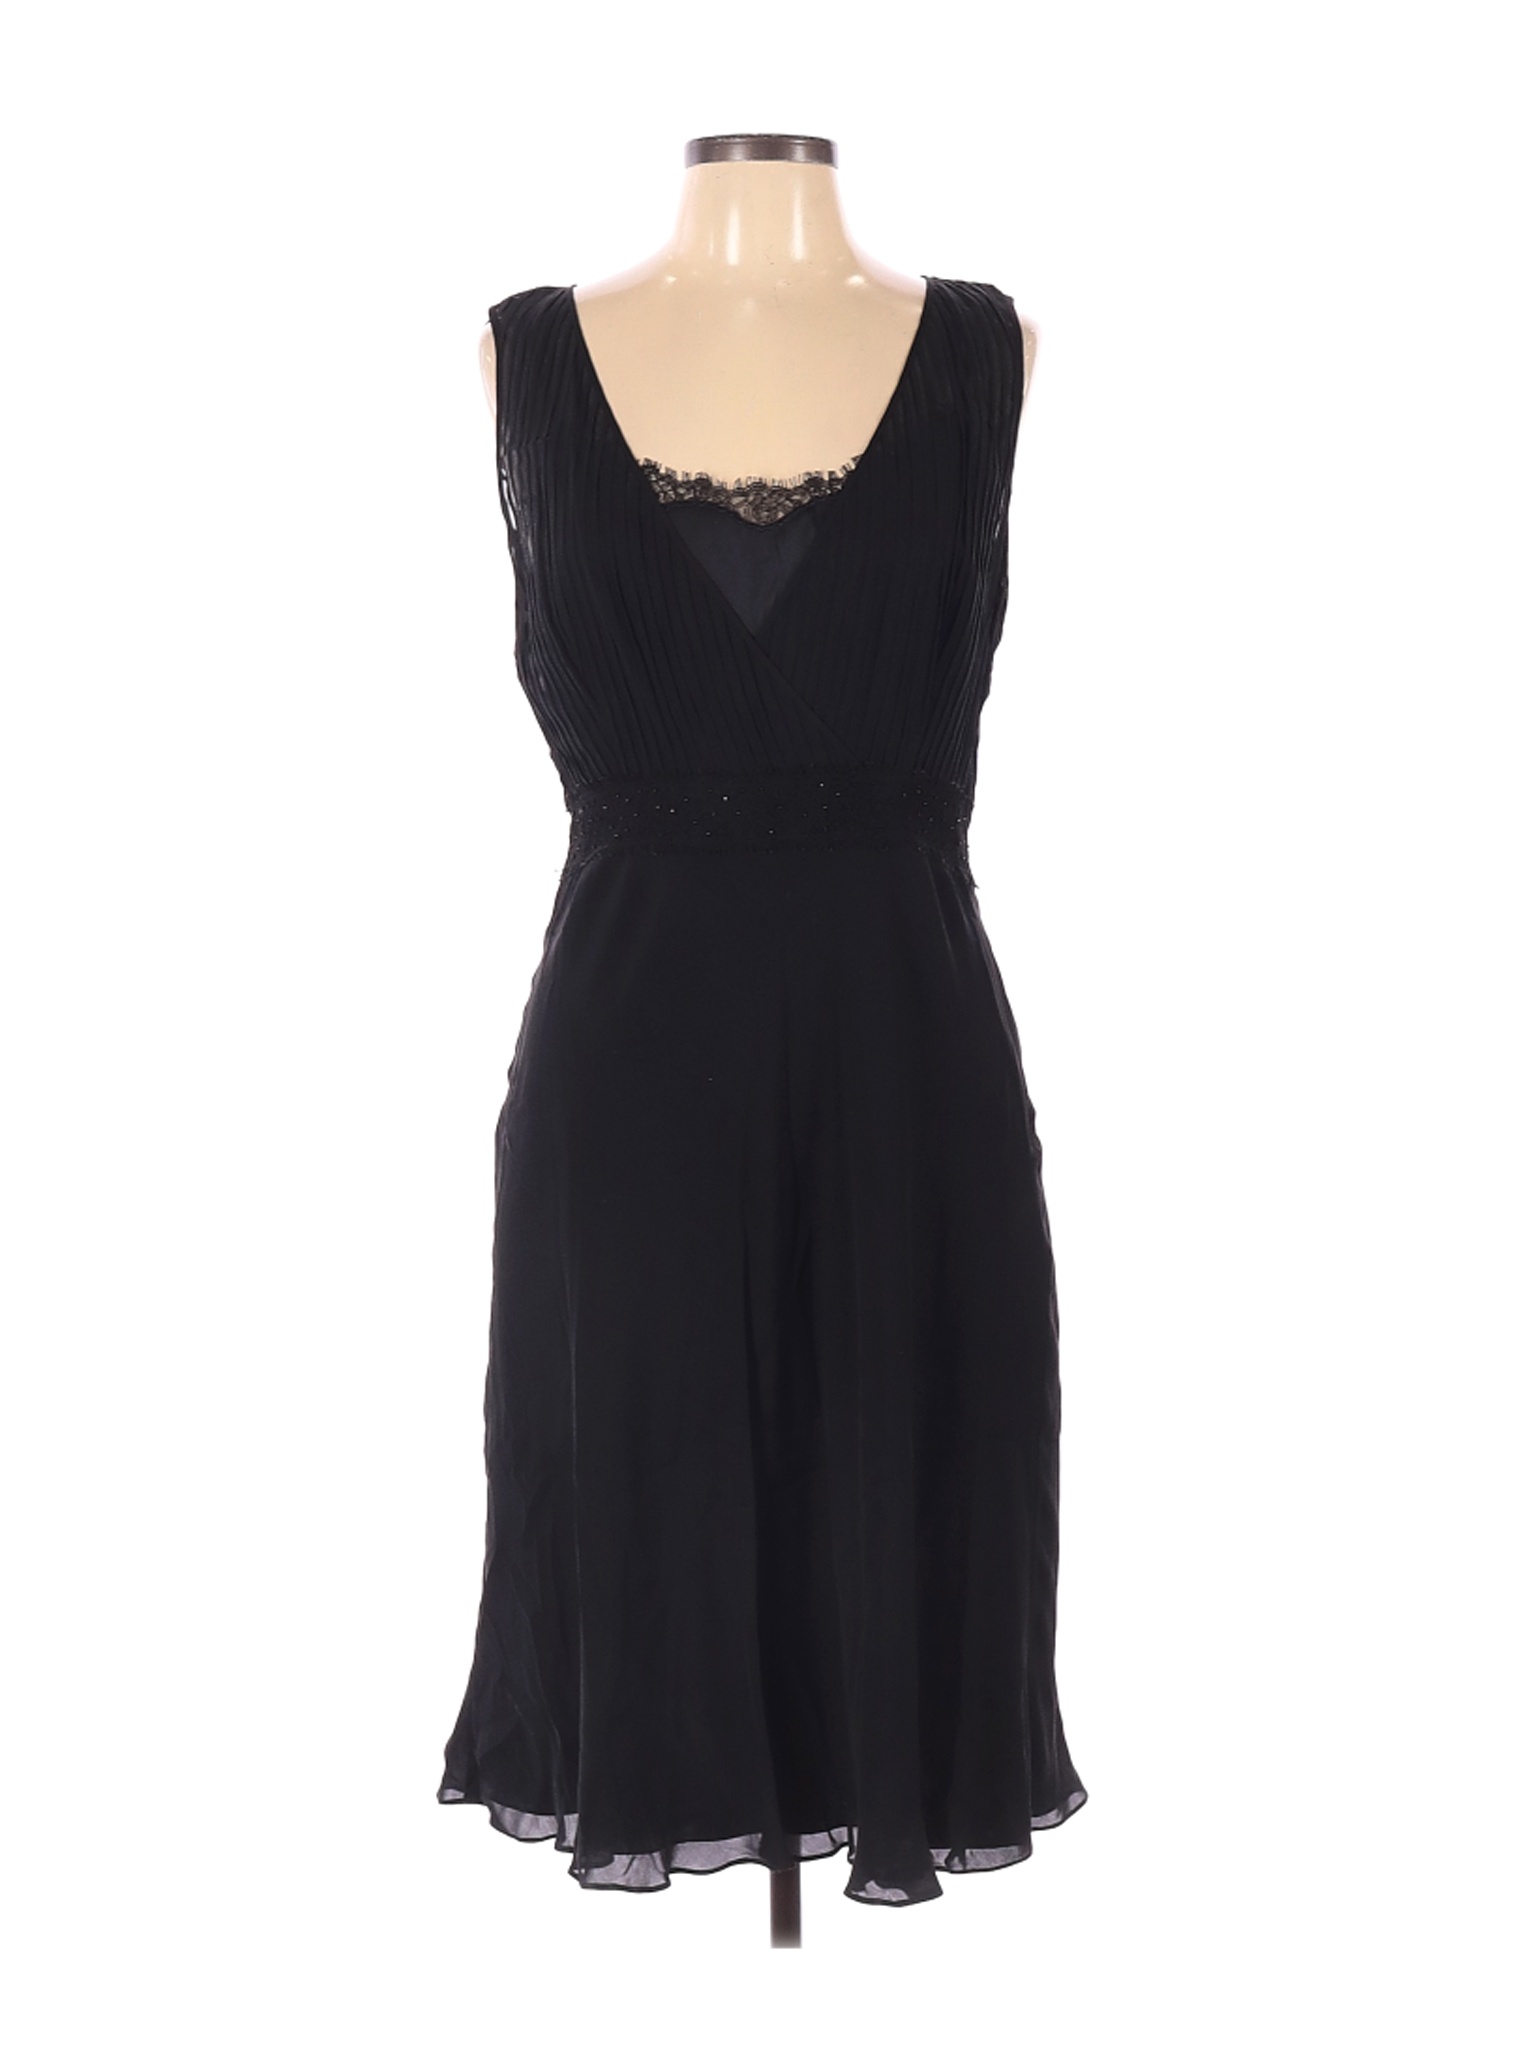 Ann Taylor Women Black Cocktail Dress 10 | eBay